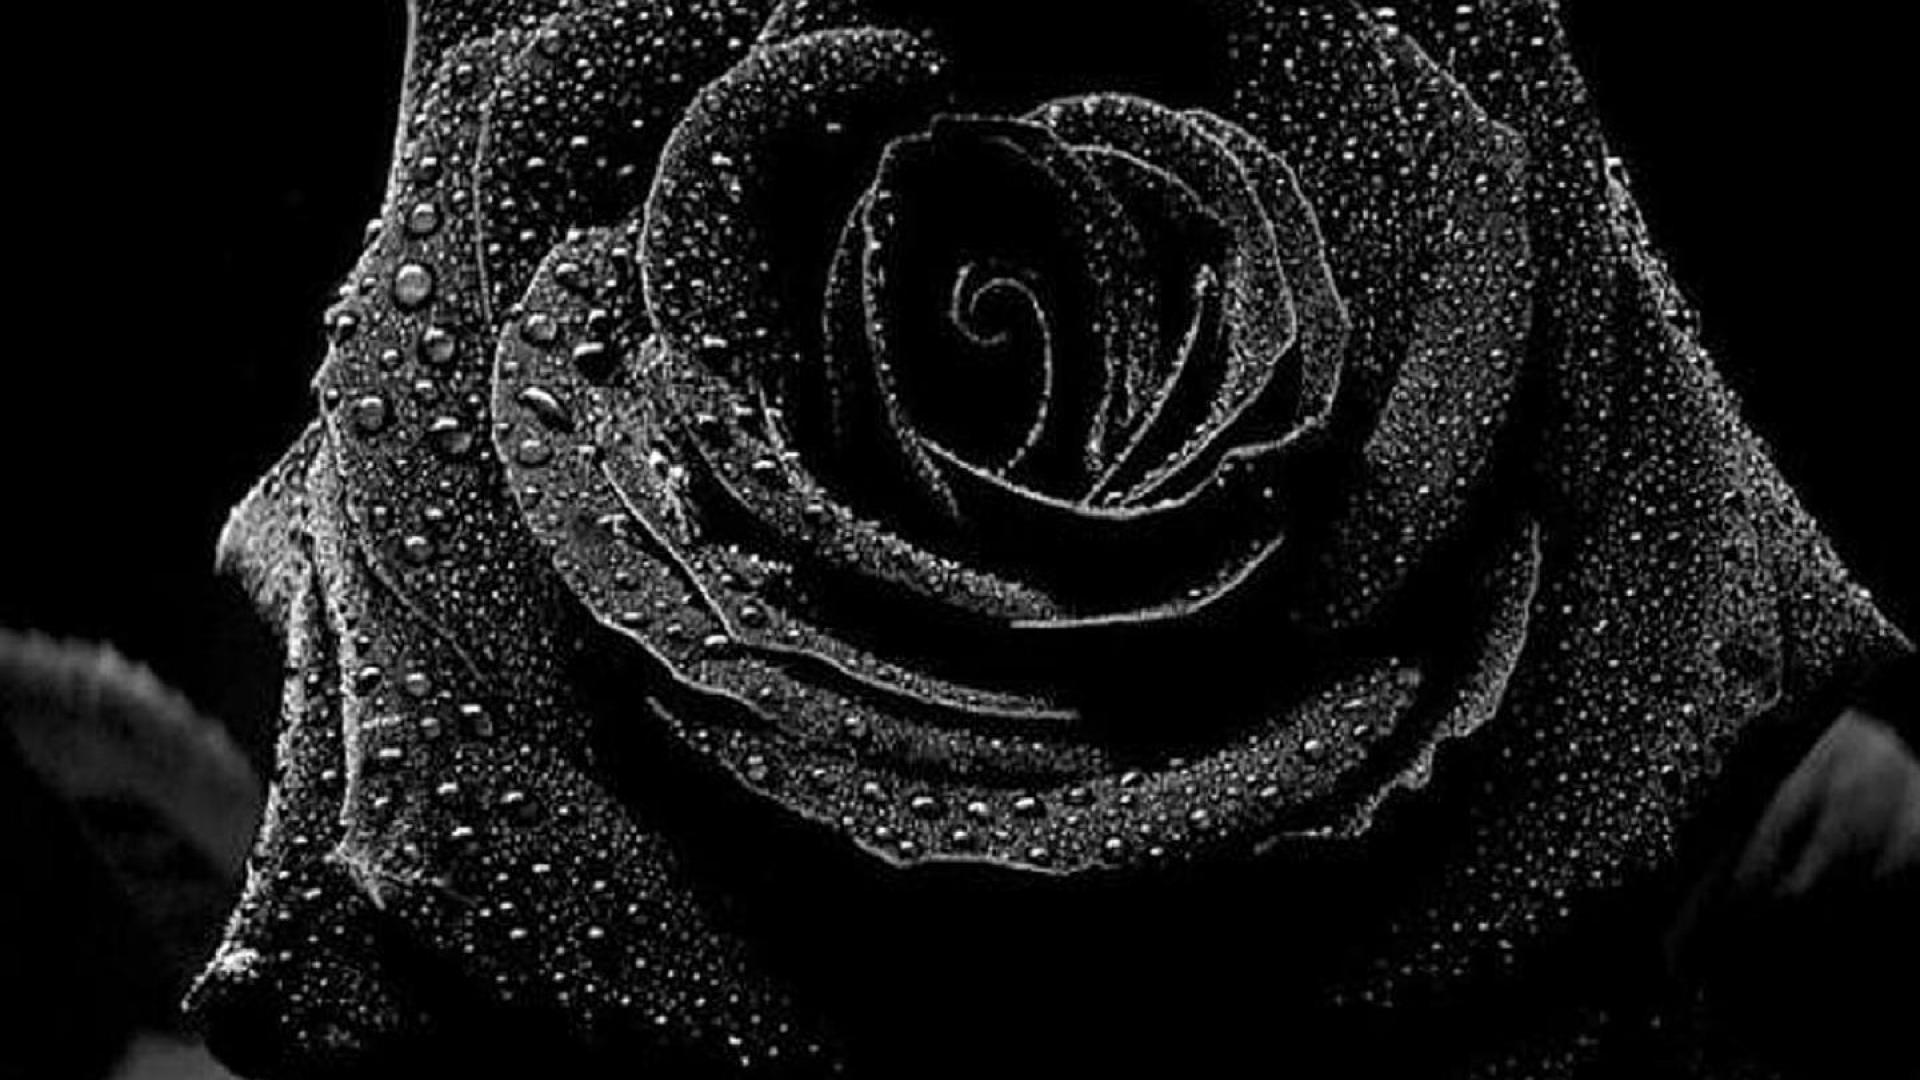 Hình nền hoa hồng đen sẽ mang lại cho bạn cảm giác đầy cảm hứng và tìm kiếm sự mới mẻ. Được thực hiện với tông màu đen đậm và hoa hồng đen rực rỡ, bức ảnh này có thể giúp bạn tạo ra một không gian làm việc mới mẻ và táo bạo.